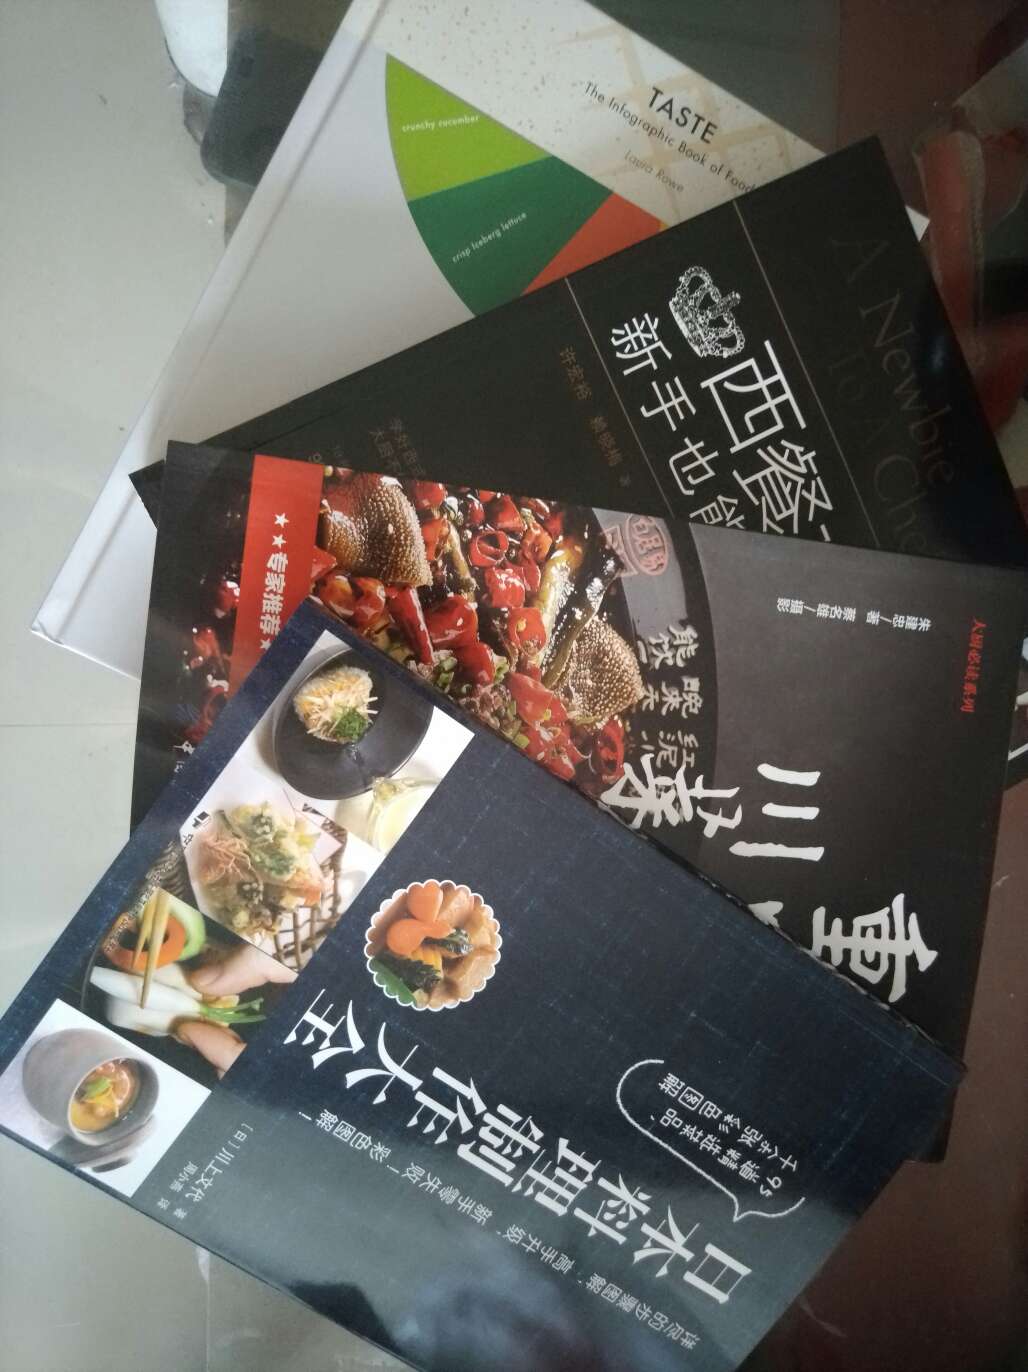 很不错的一本日本料理书，我要是学会了就厉害了哈哈哈